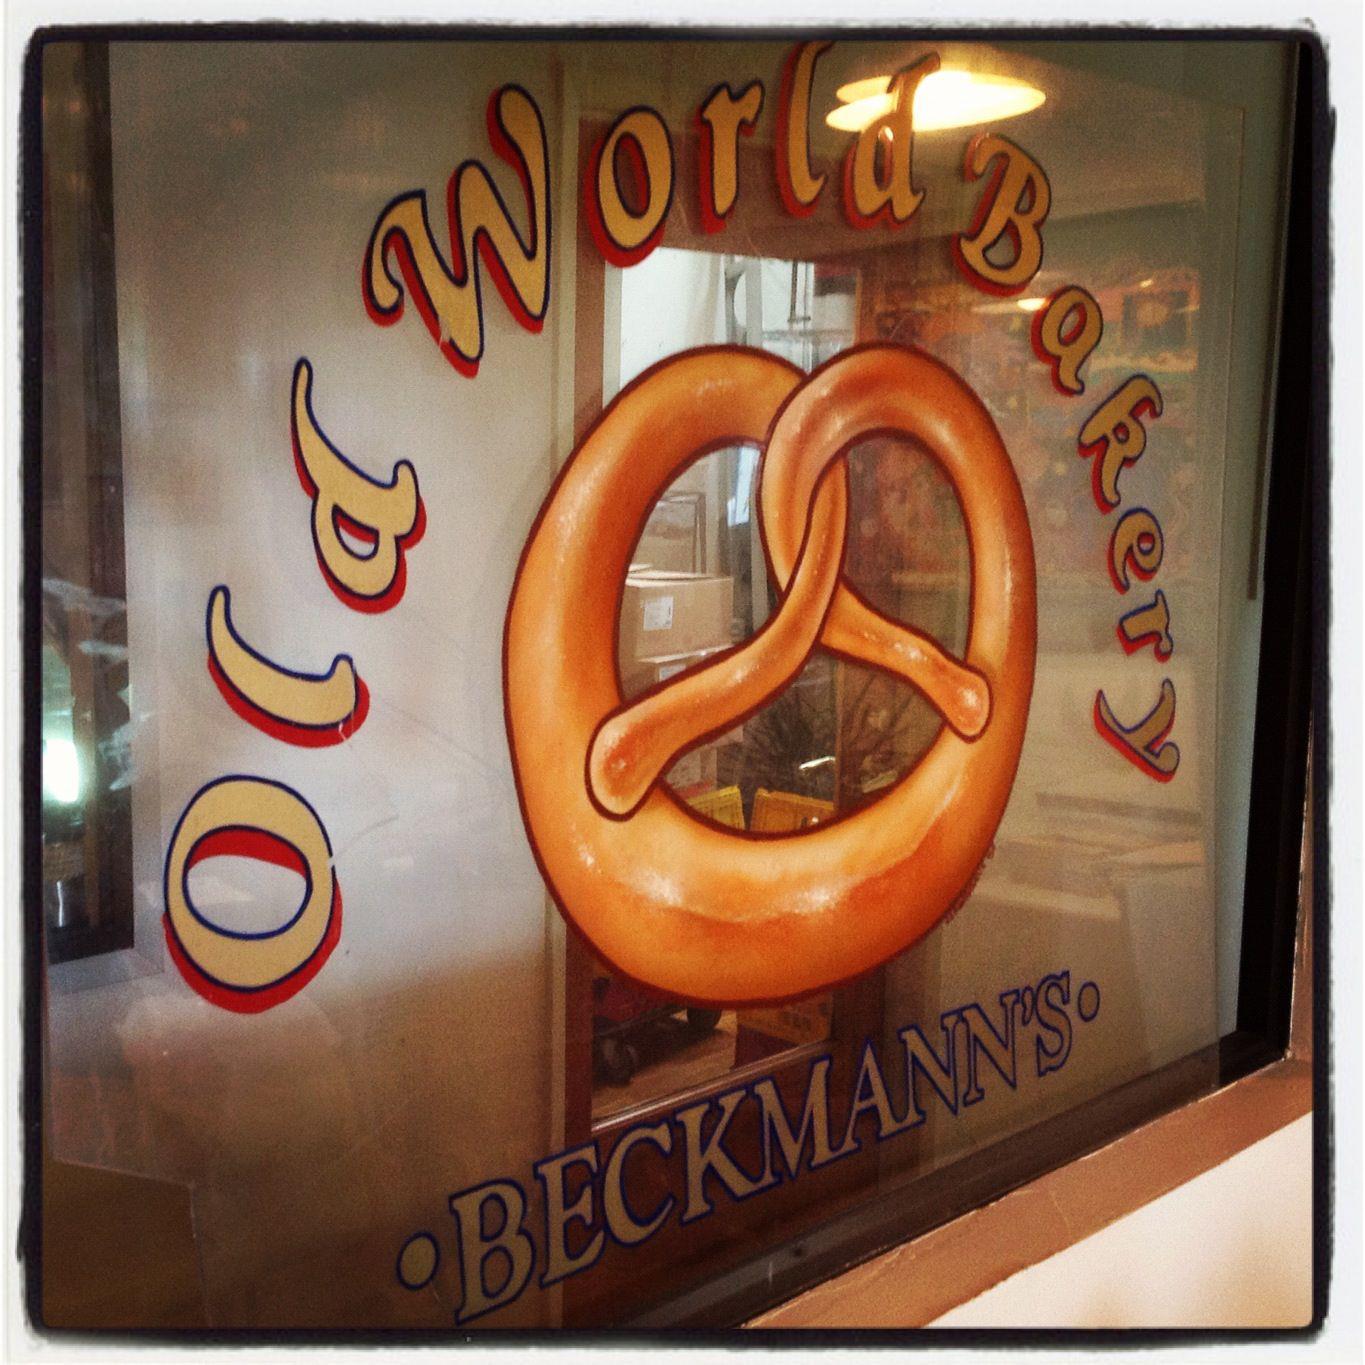 bakery window with a pretzel